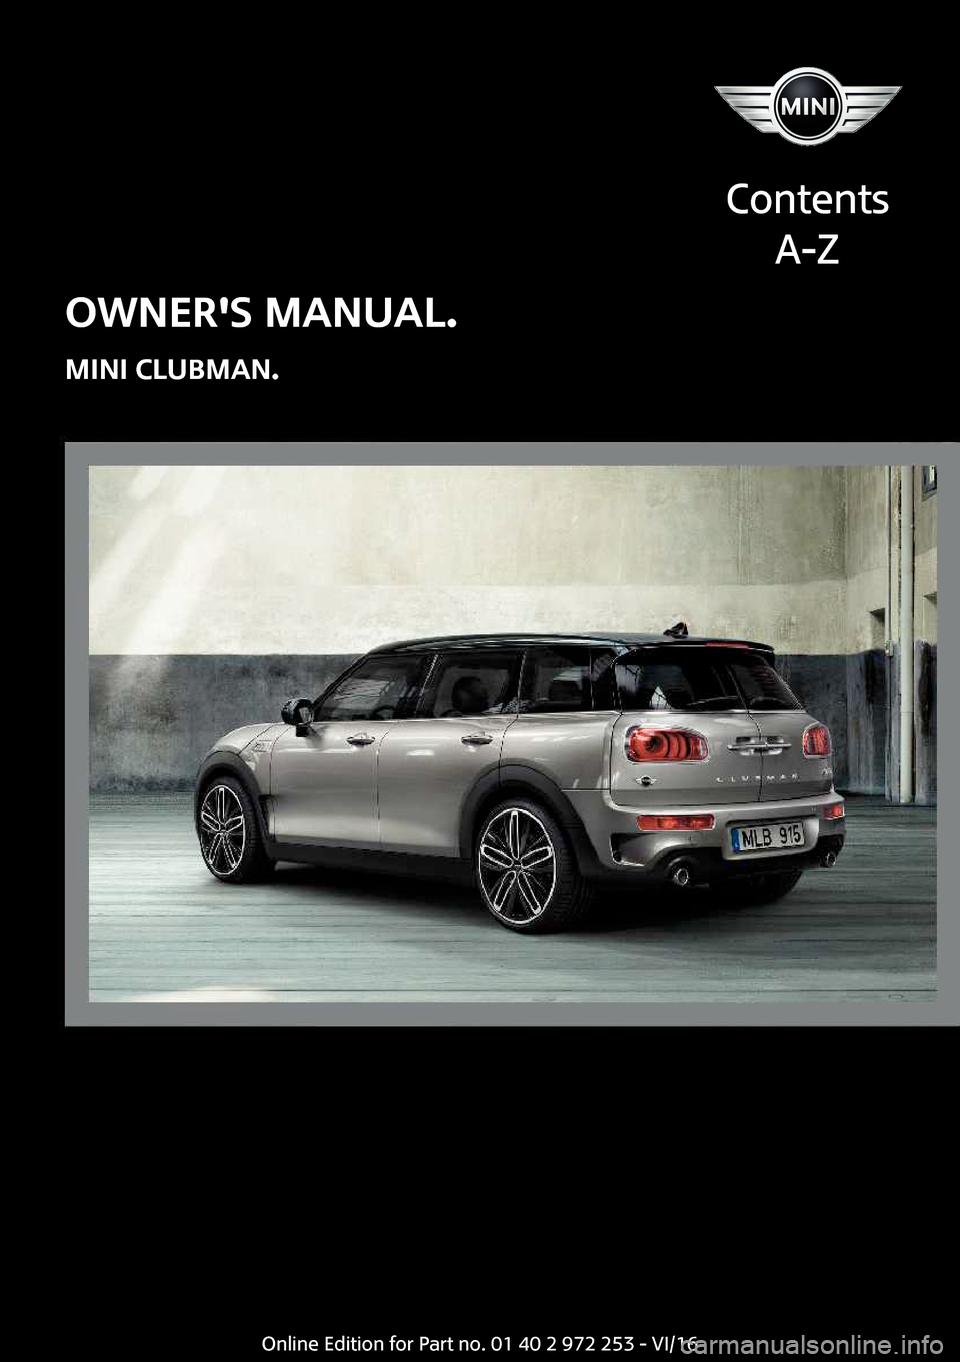 MINI Clubman 2016  Owners Manual �O�W�N�E�R��S��M�A�N�U�A�L�.
�M�I�N�I��C�L�U�B�M�A�N�.
�C�o�n�t�e�n�t�s �A�-�Z�O�n�l�i�n�e� �E�d�i�t�i�o�n� �f�o�r� �P�a�r�t� �n�o�.� �0�1� �4�0� �2� �9�7�2� �2�5�3� �-� �V�I�/�1�6  